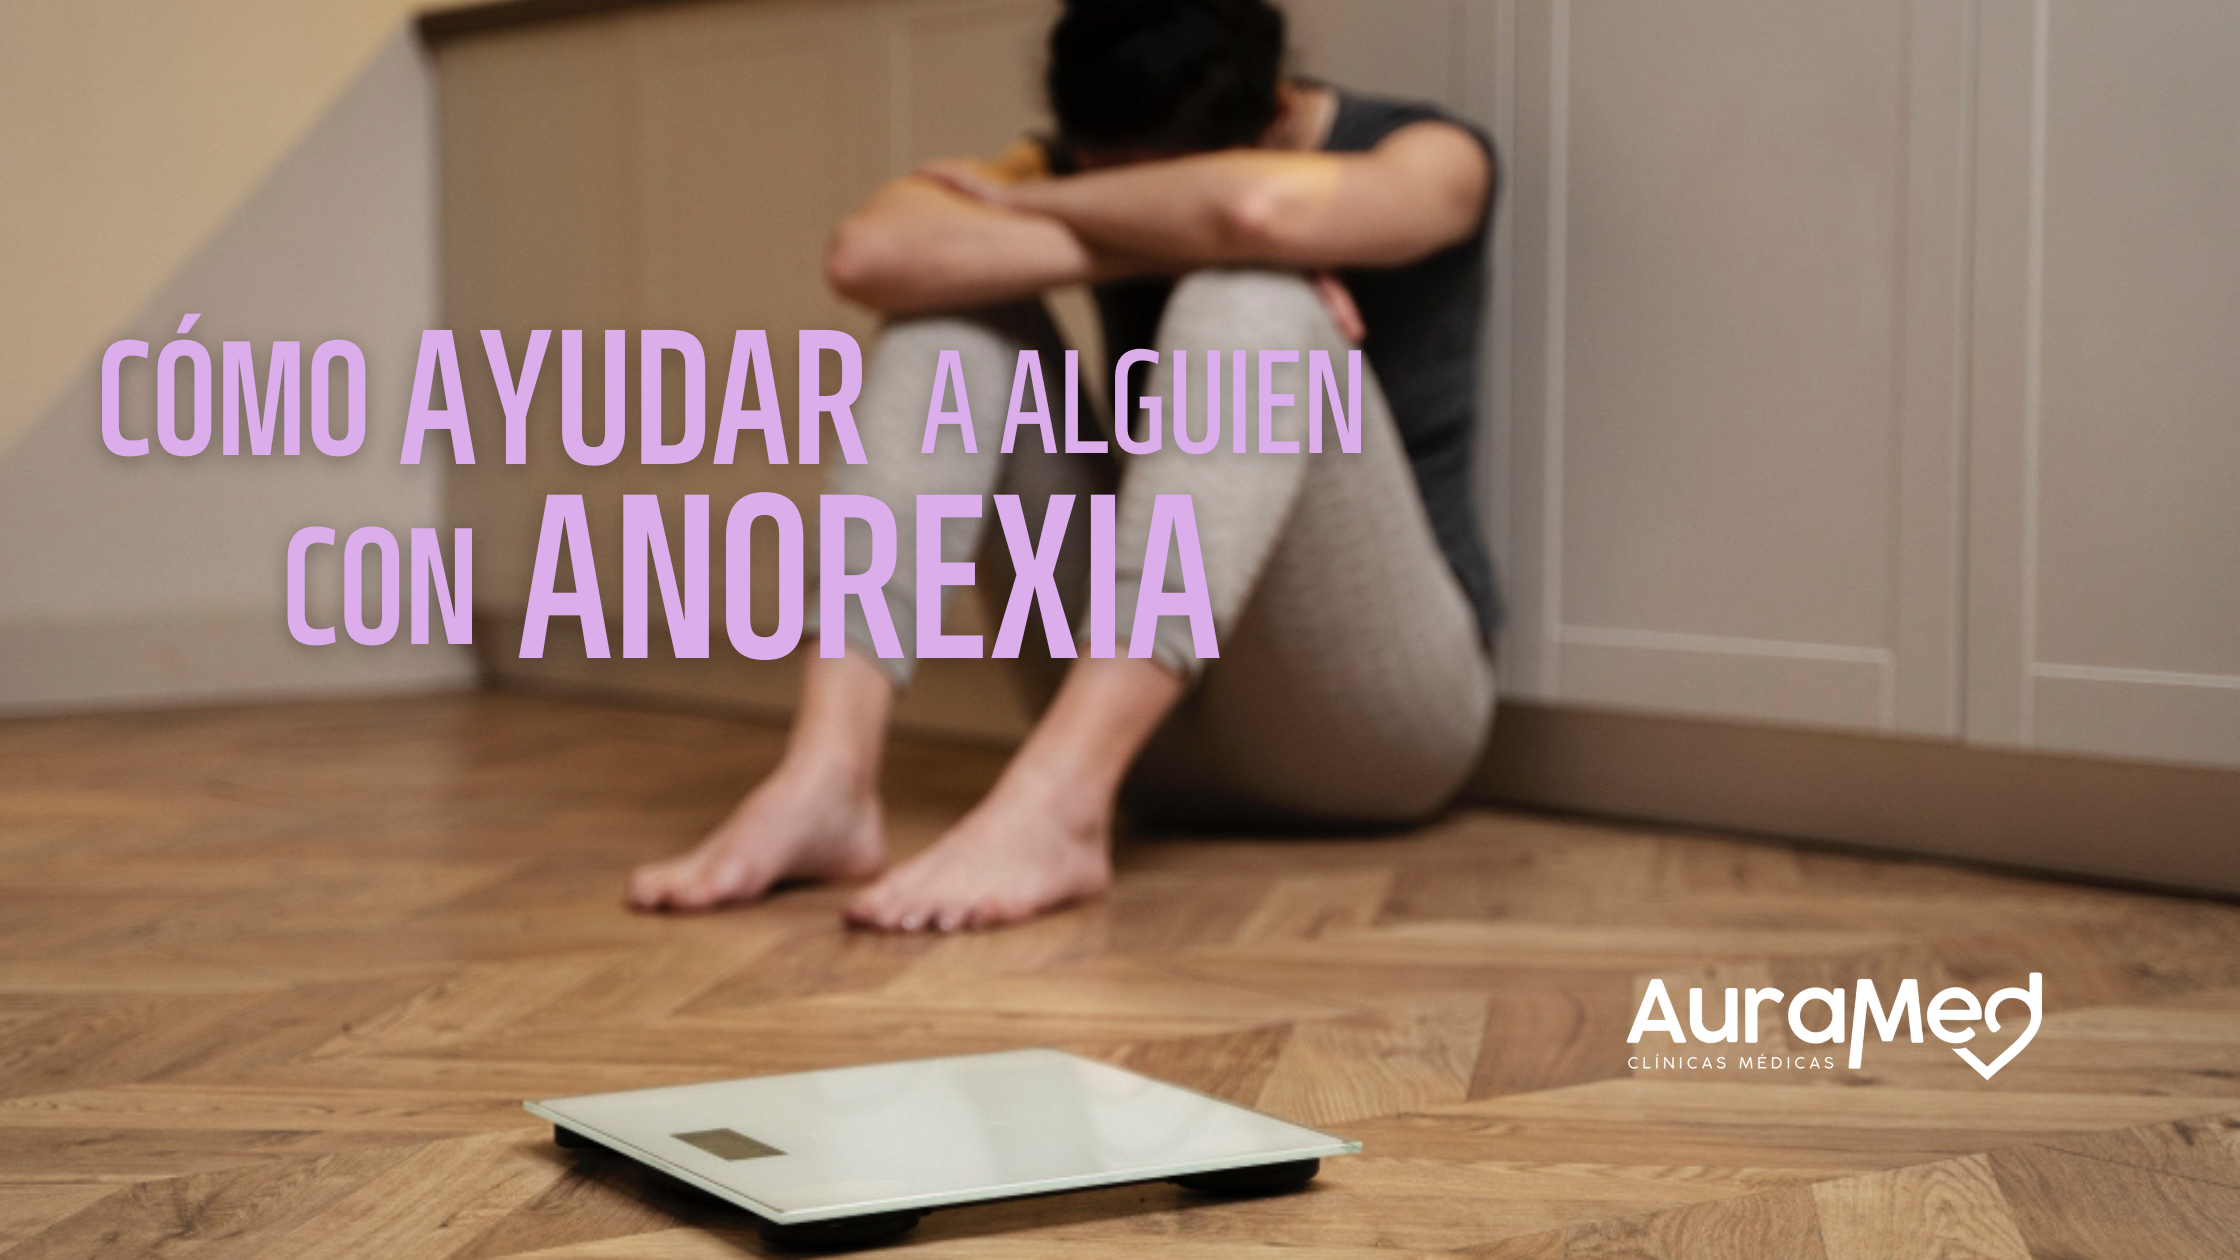 Auramed como ayudar a alguien con anorexia